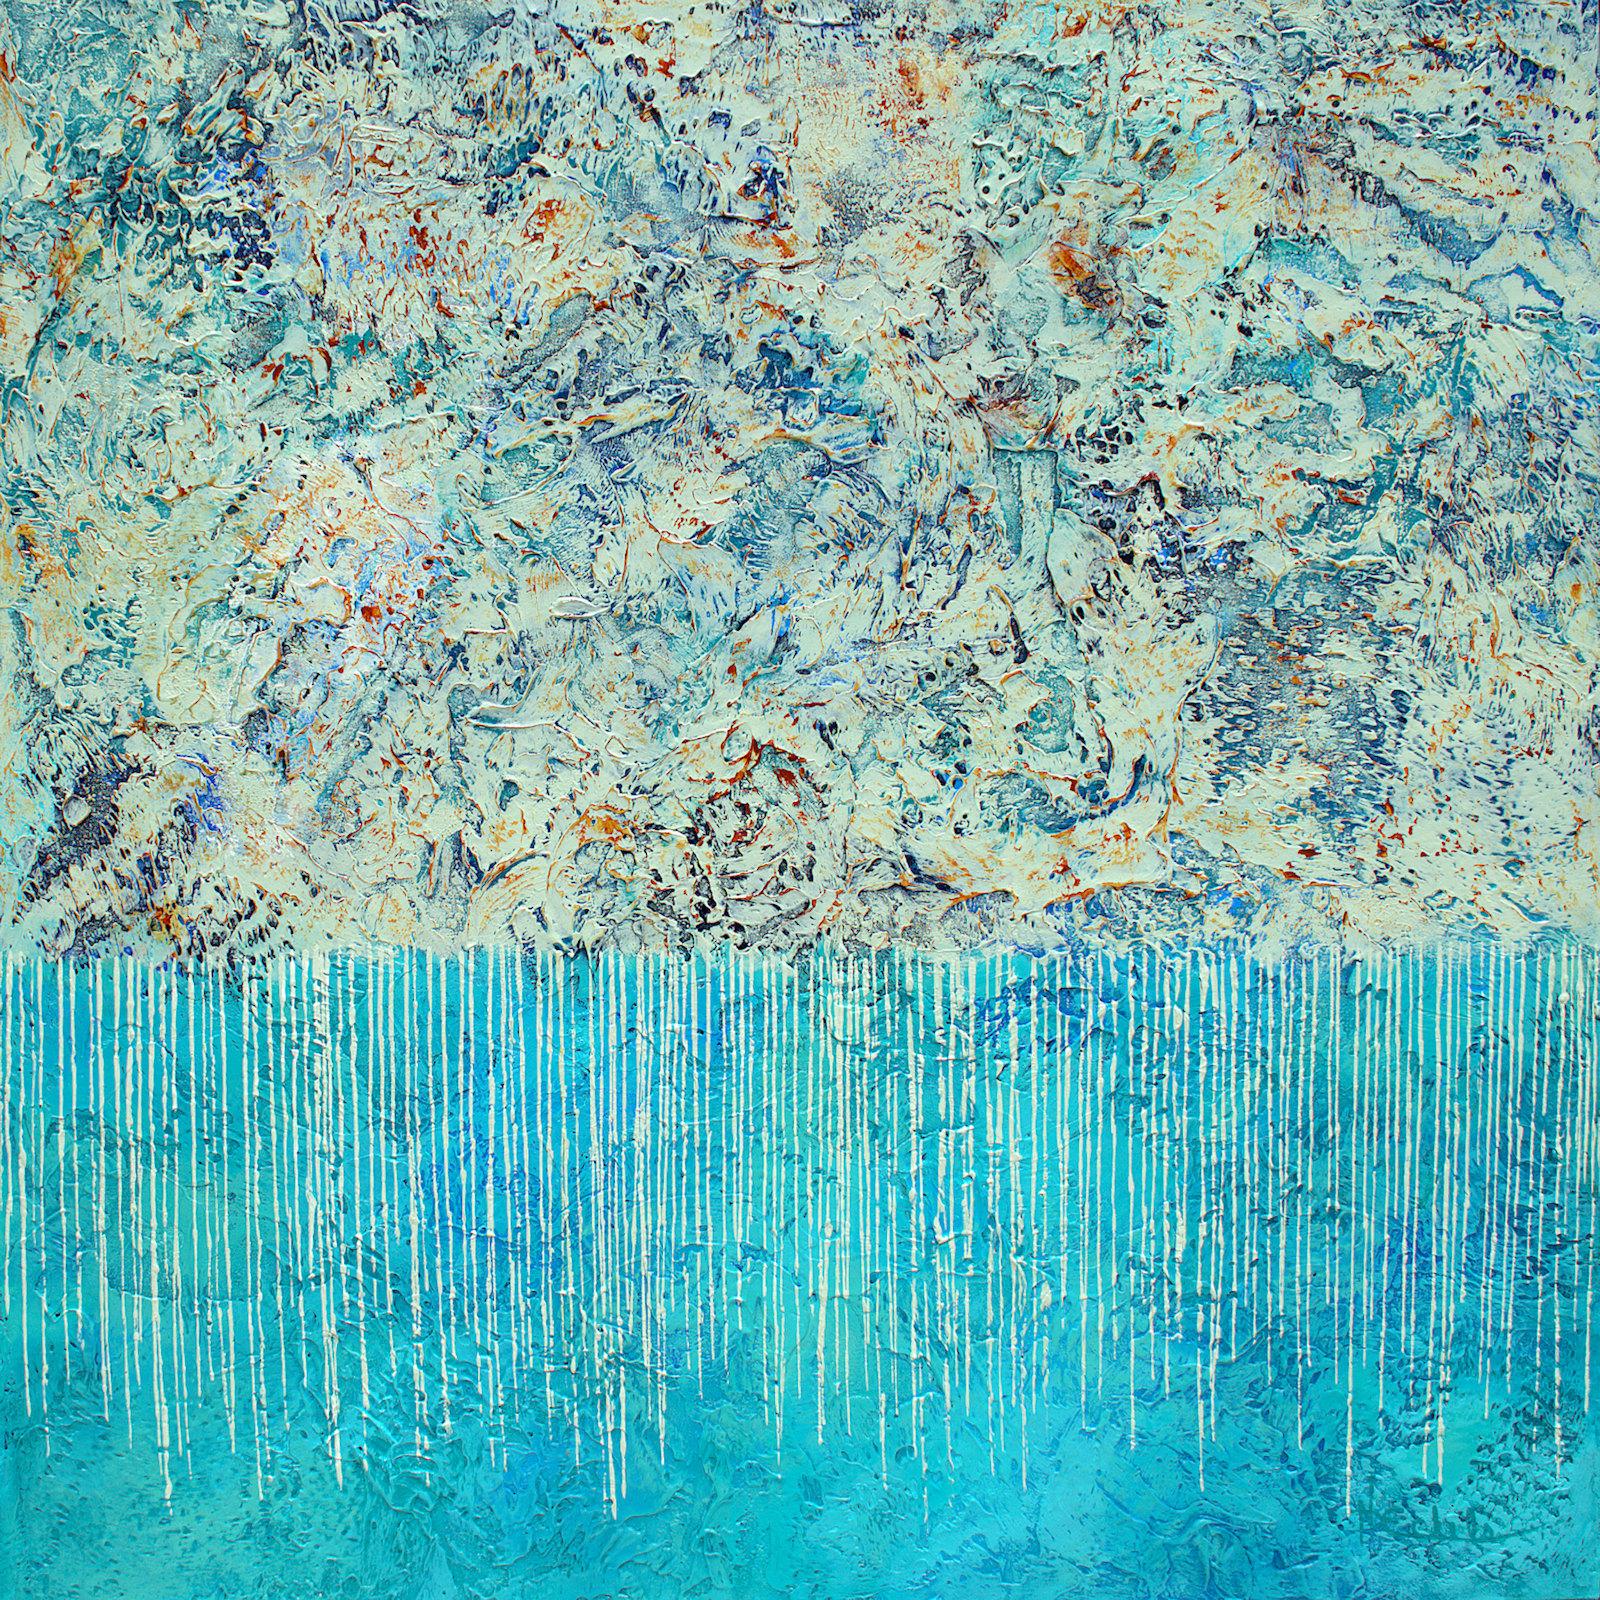 Nancy Eckels Abstract Painting – Mixed Media ""Soothing" Abstrakt mit strukturierten Blau-, Teal-, Aqua- und Grautönen